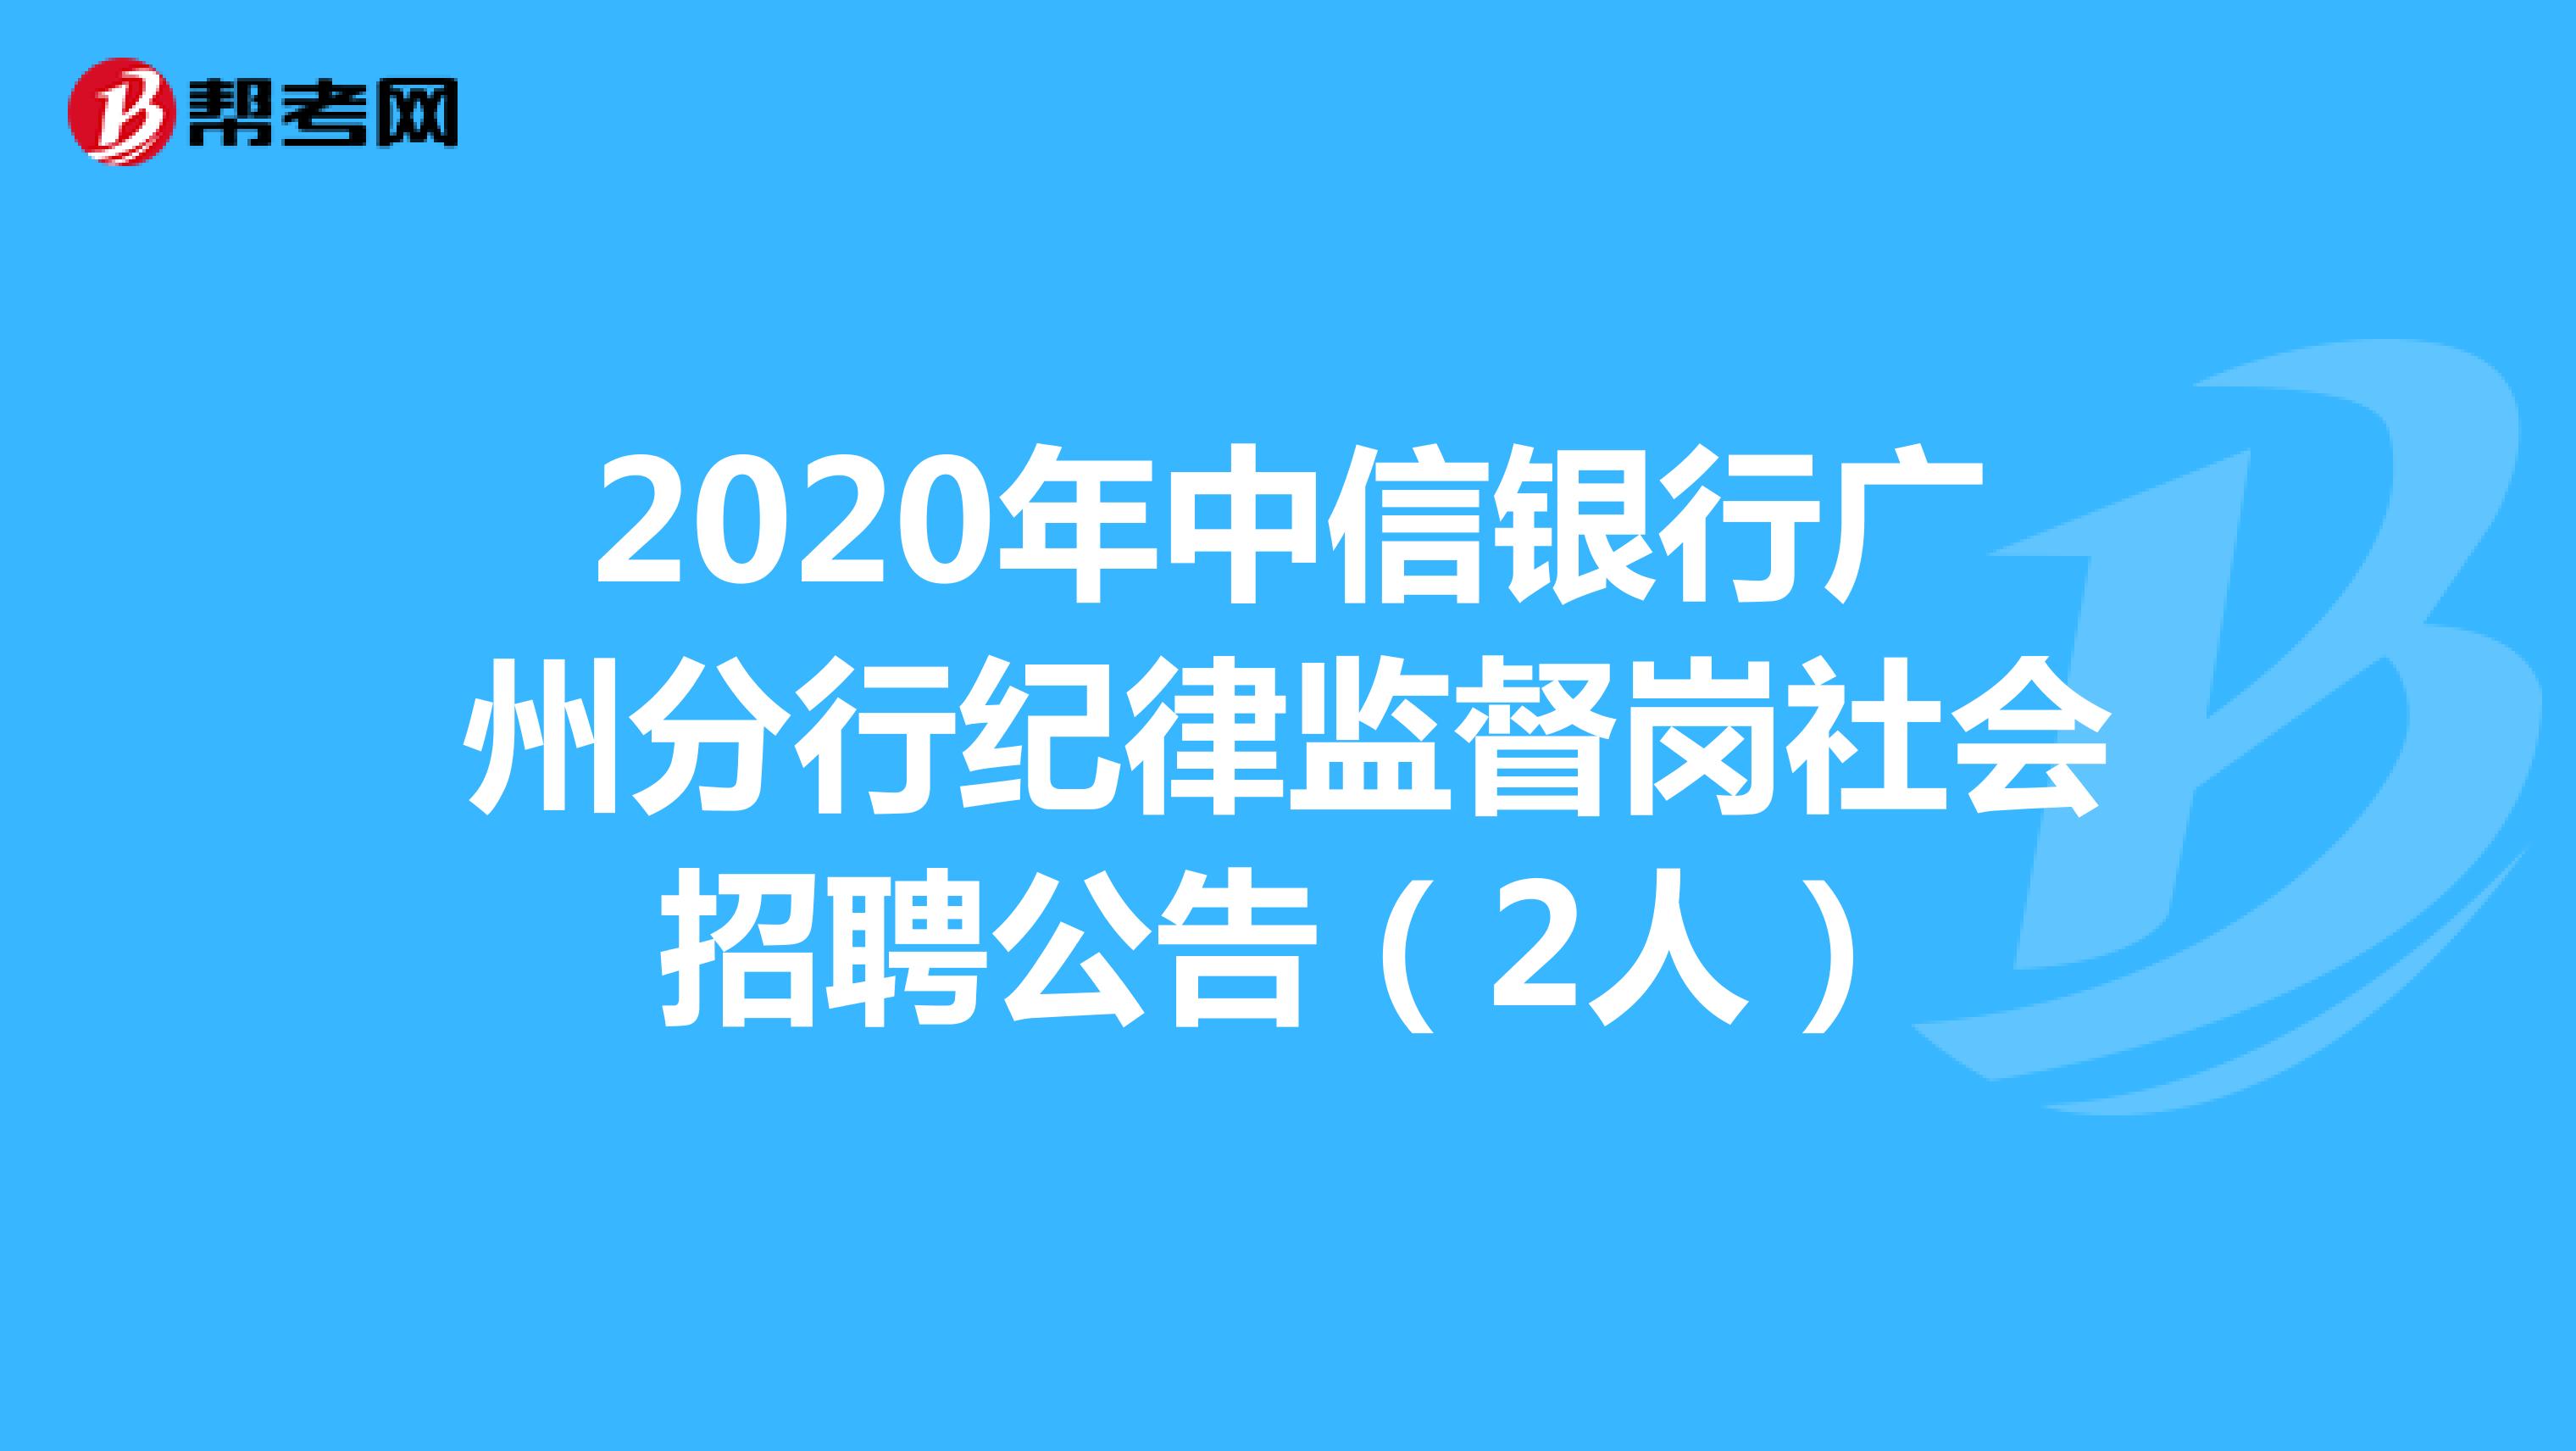 2020年中信银行广州分行纪律监督岗社会招聘公告（2人）